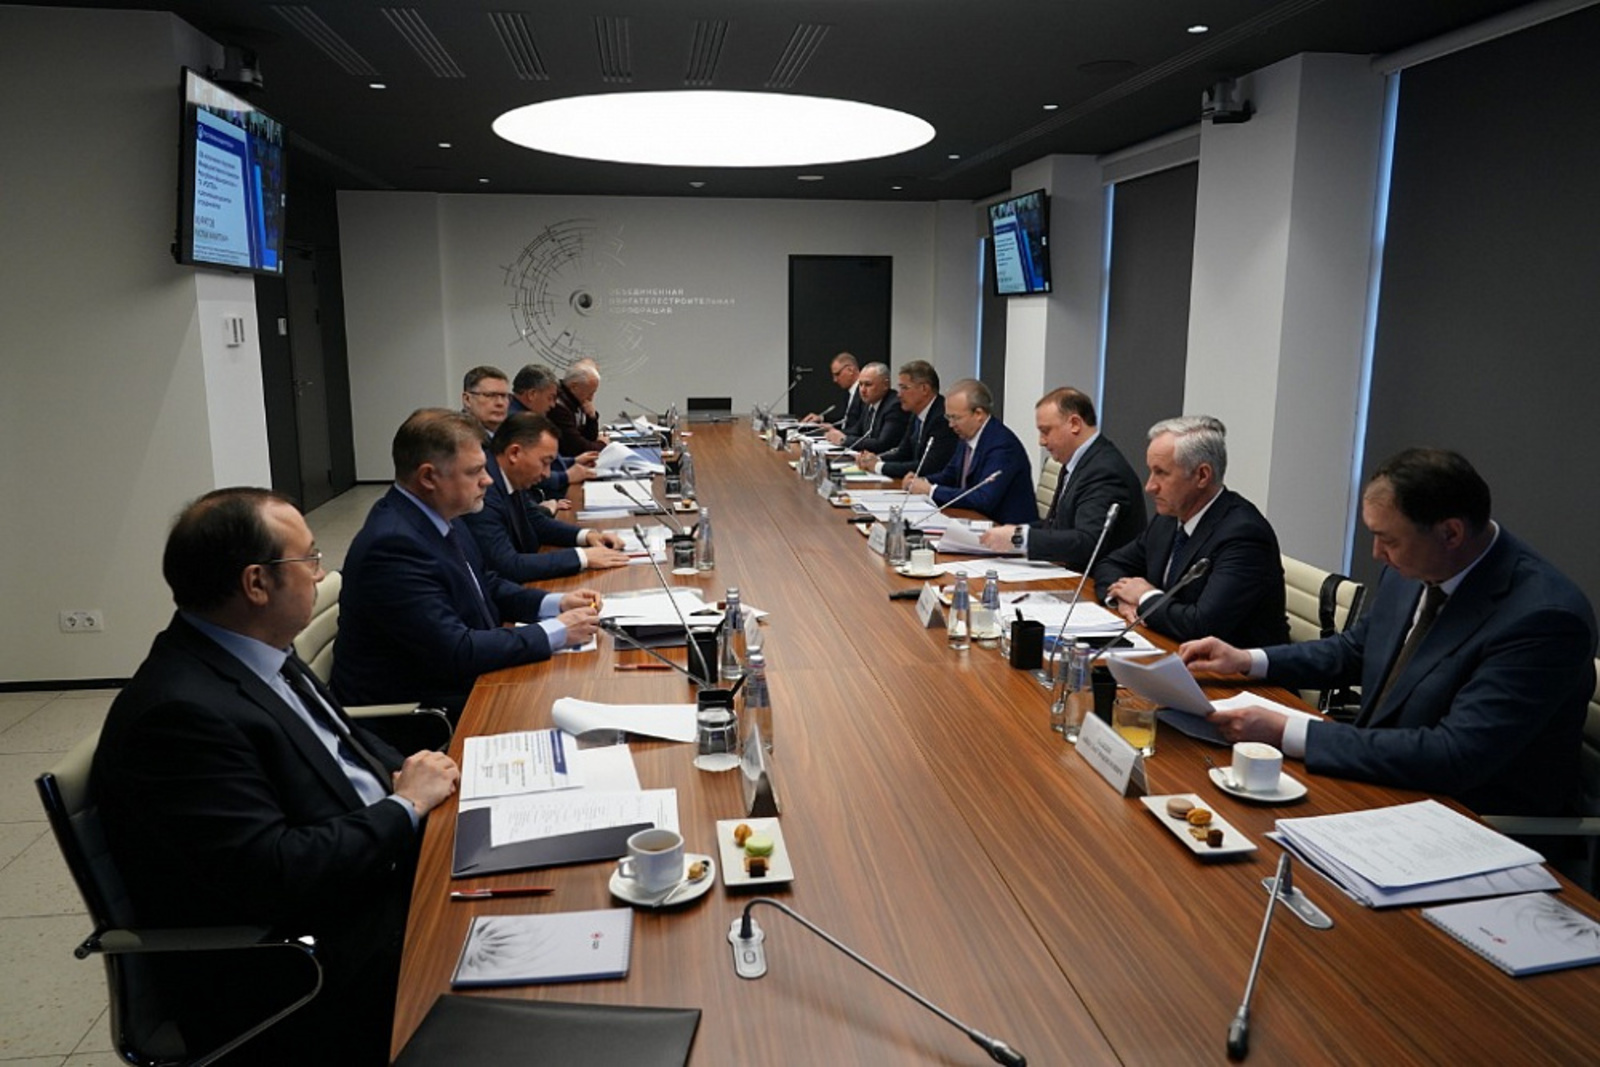 Радий Хабиров и Анатолий Сердюков провели заседание Межведомственной комиссии по взаимодействию с Ростехом